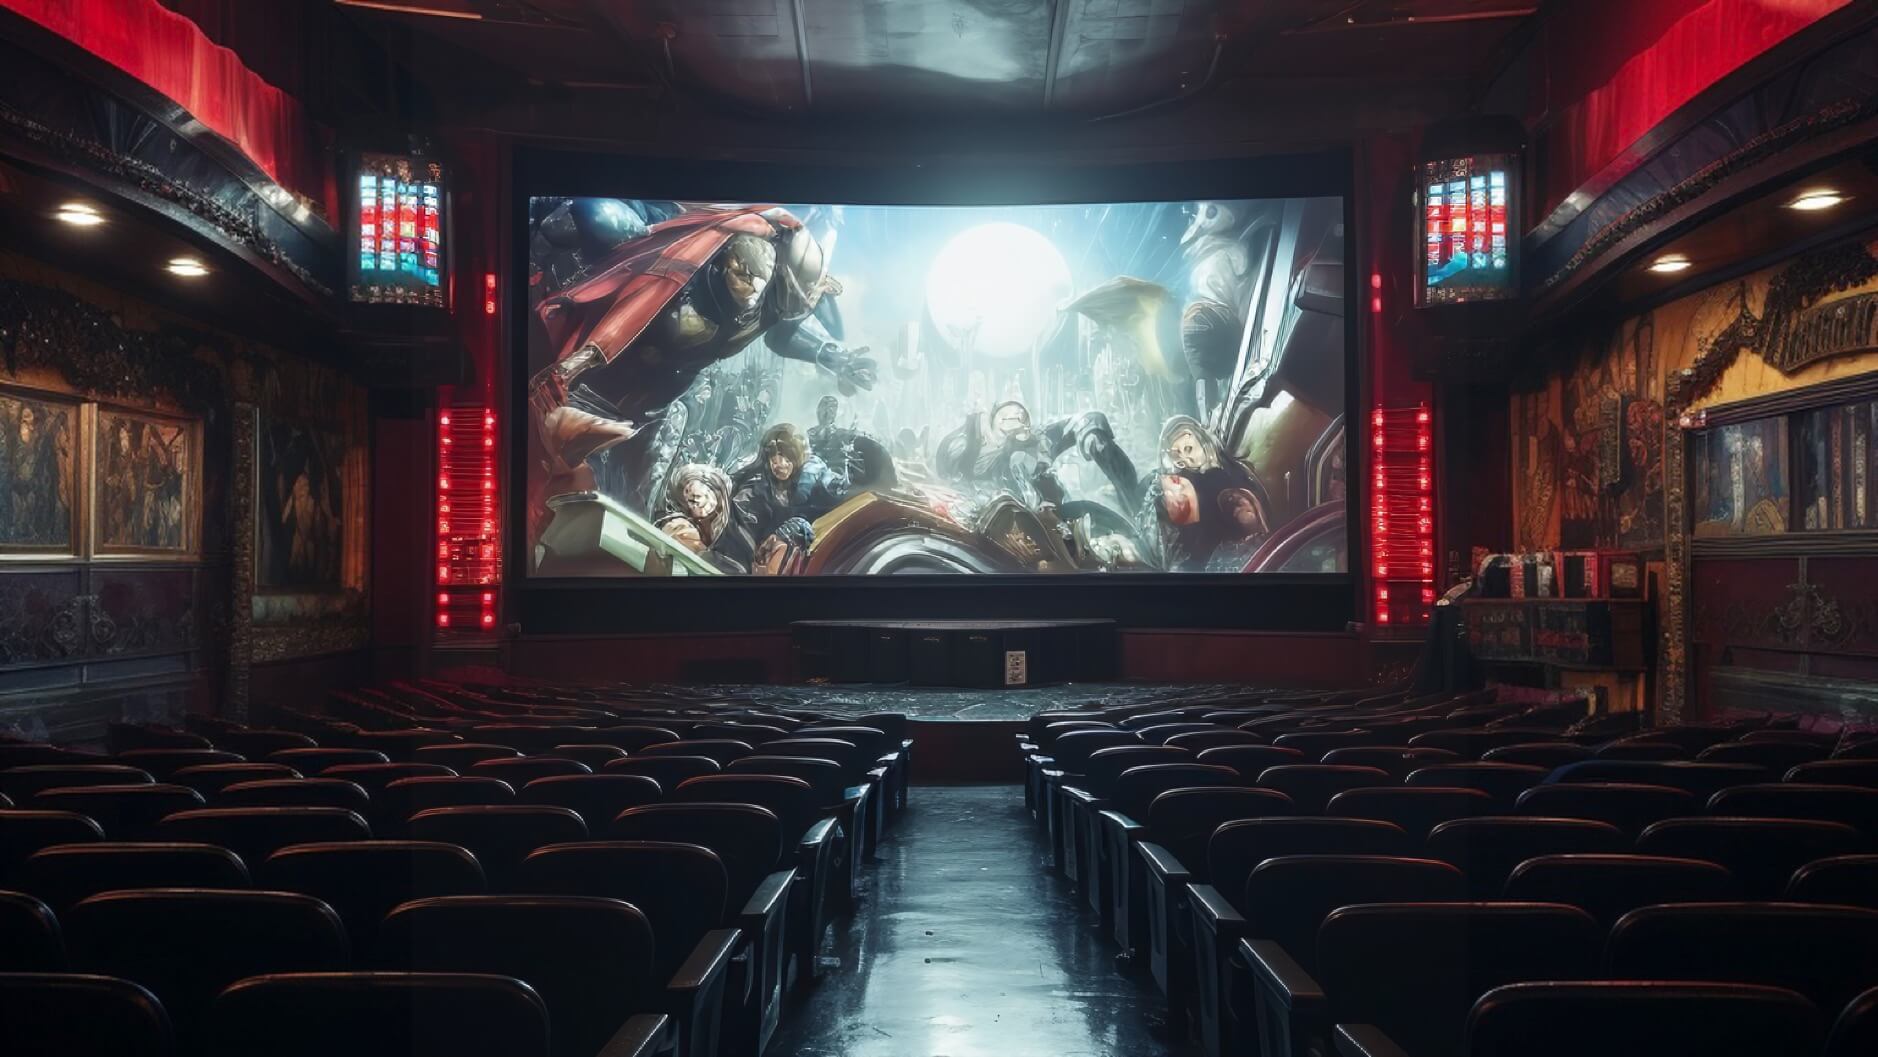 Bild aus leerem Kinosaal mit generischem Superhero-Film auf der Leinwand.